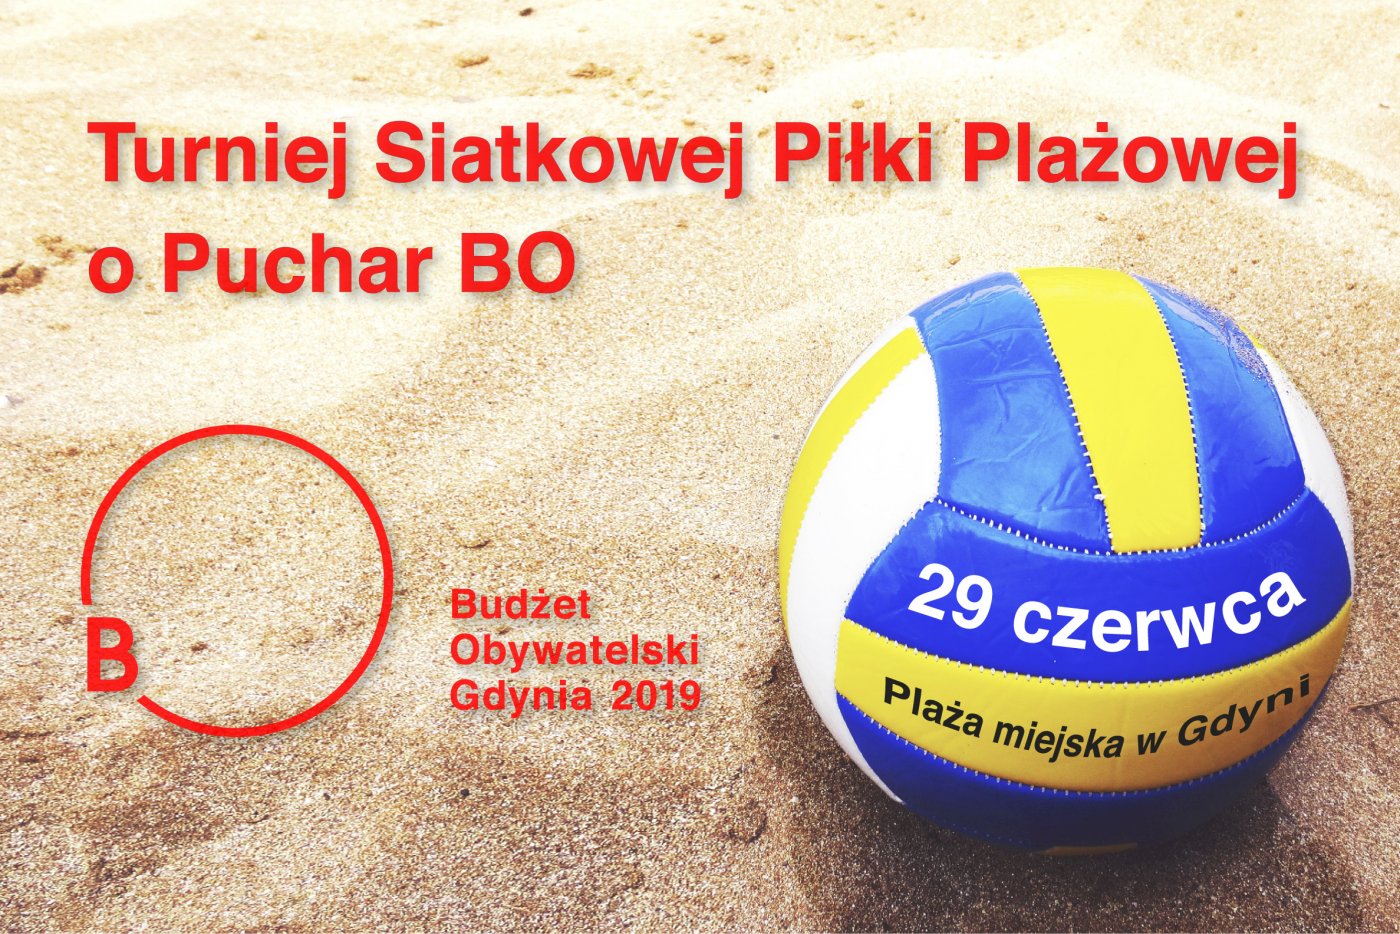 Turniej Siatkowej Piłki Plażowej o Puchar BO 2019